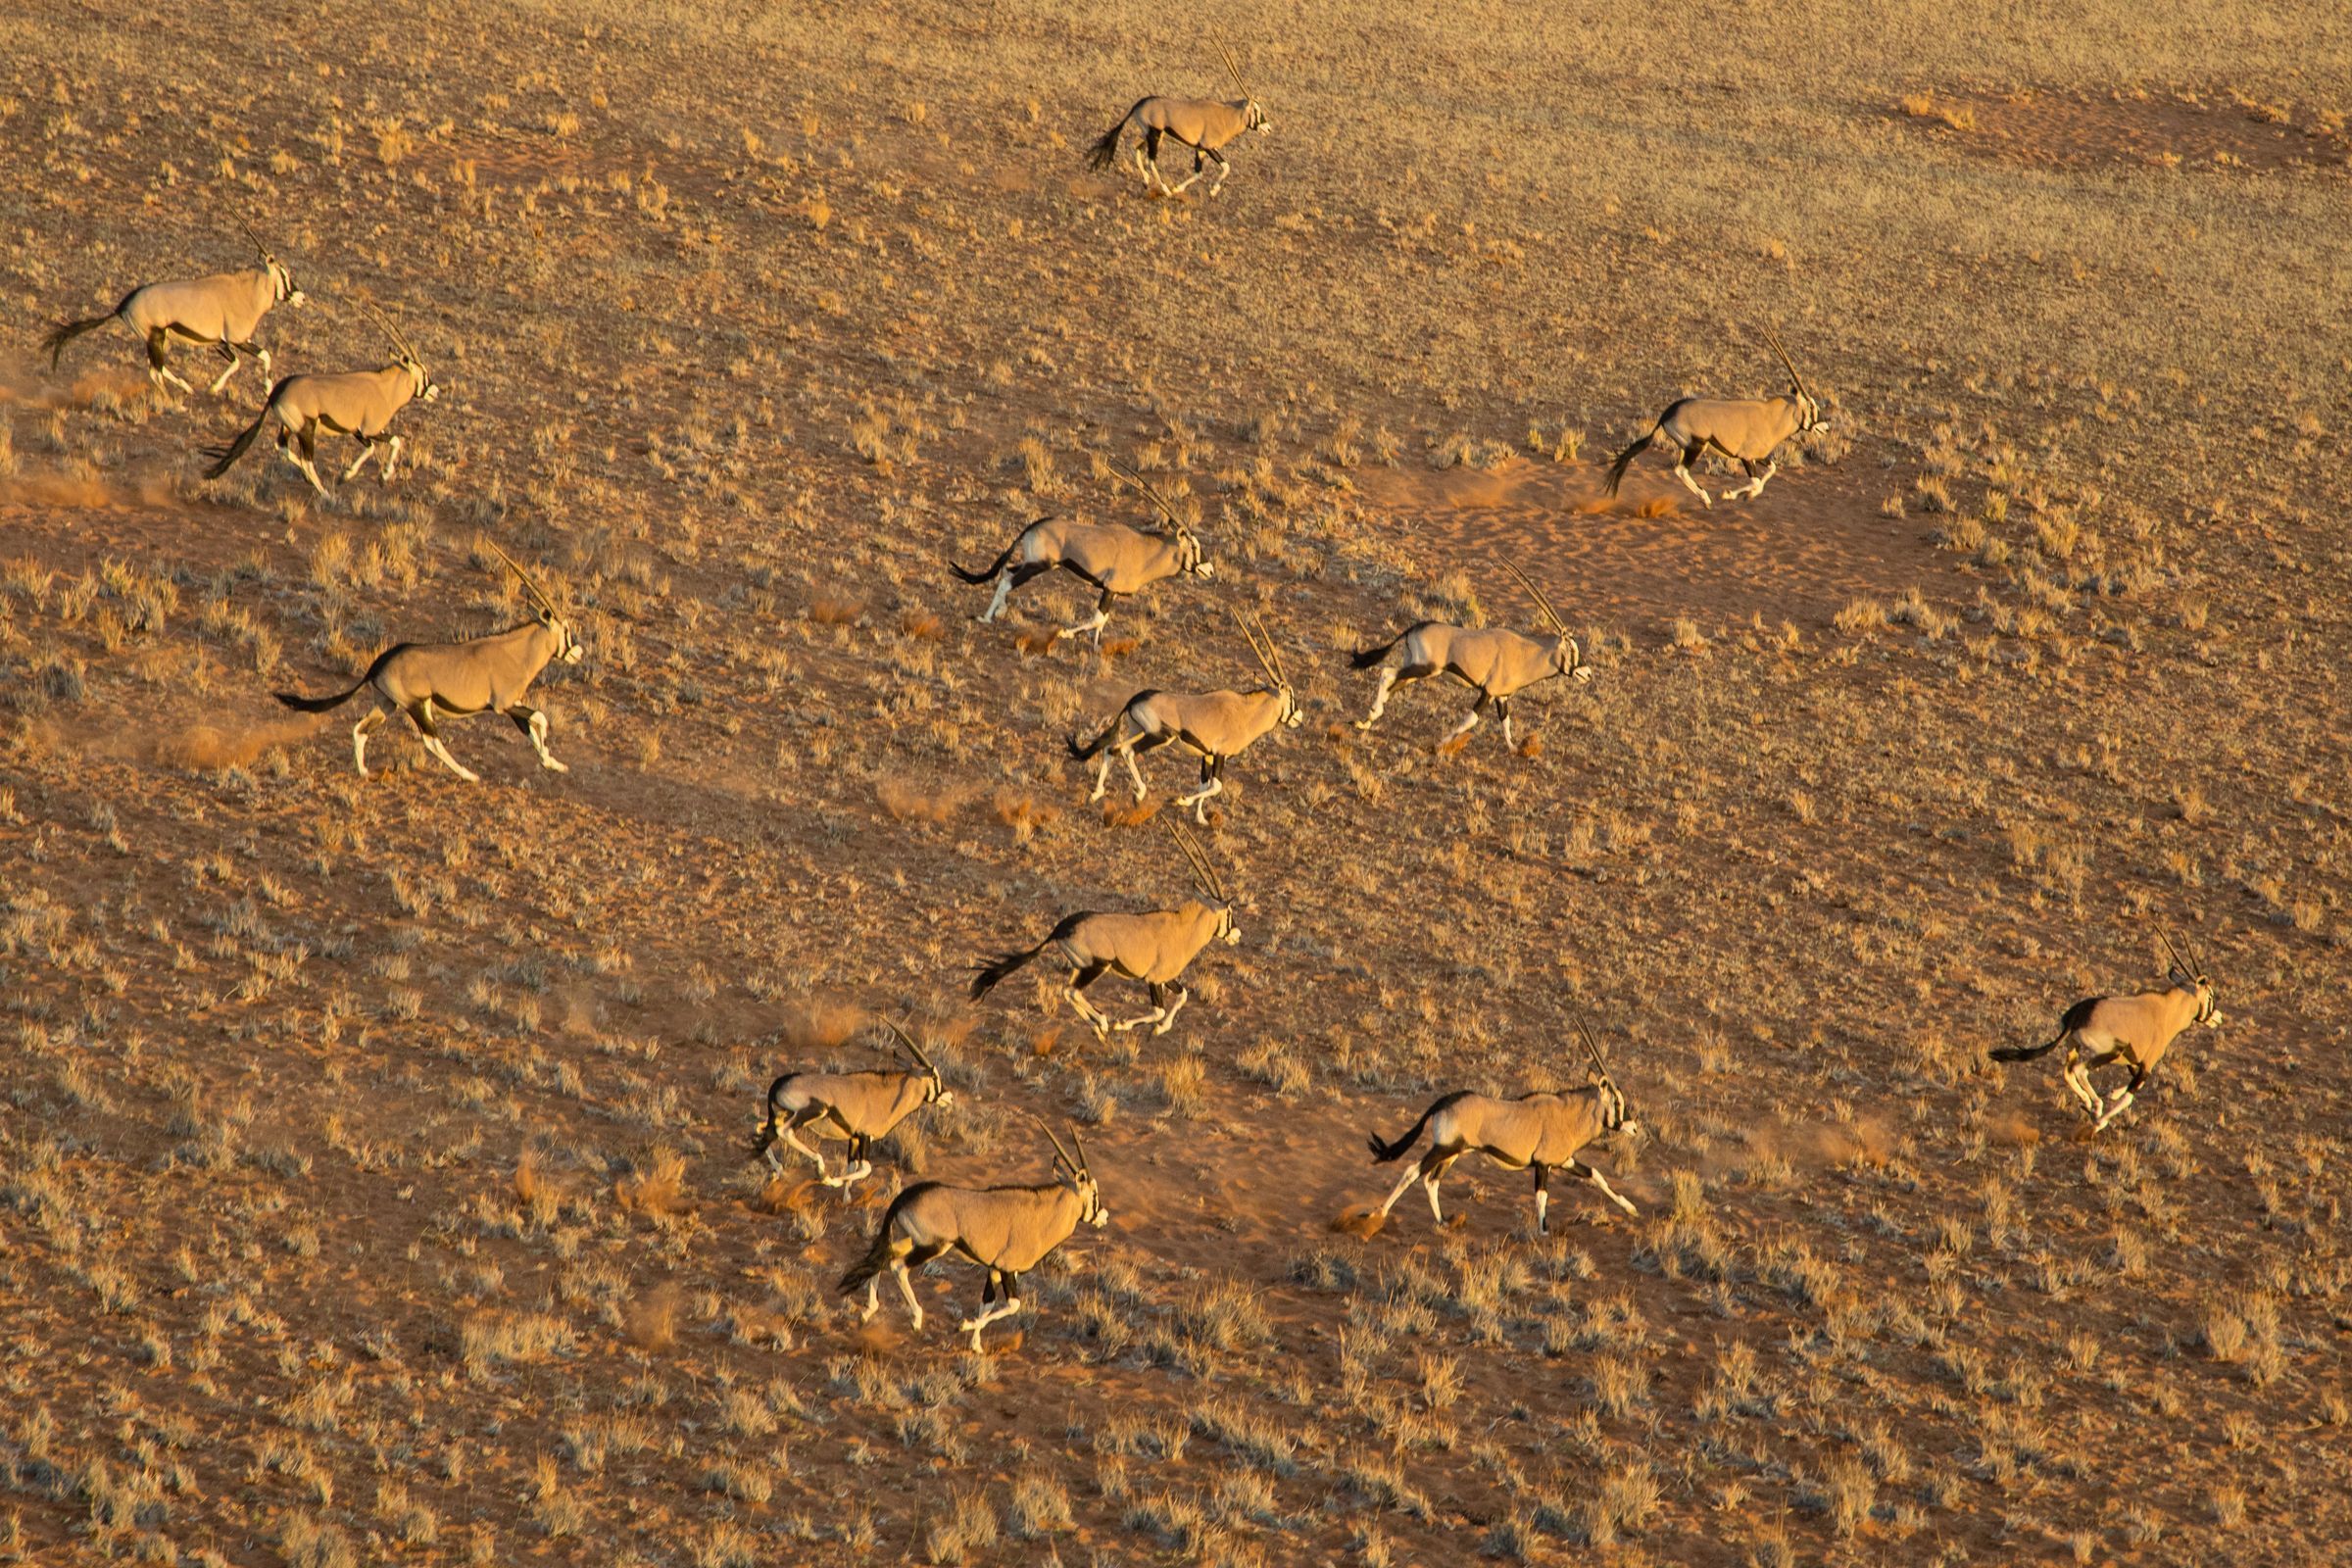 A herd of oryx runs across the grasslands of Sossusvlei at sunset